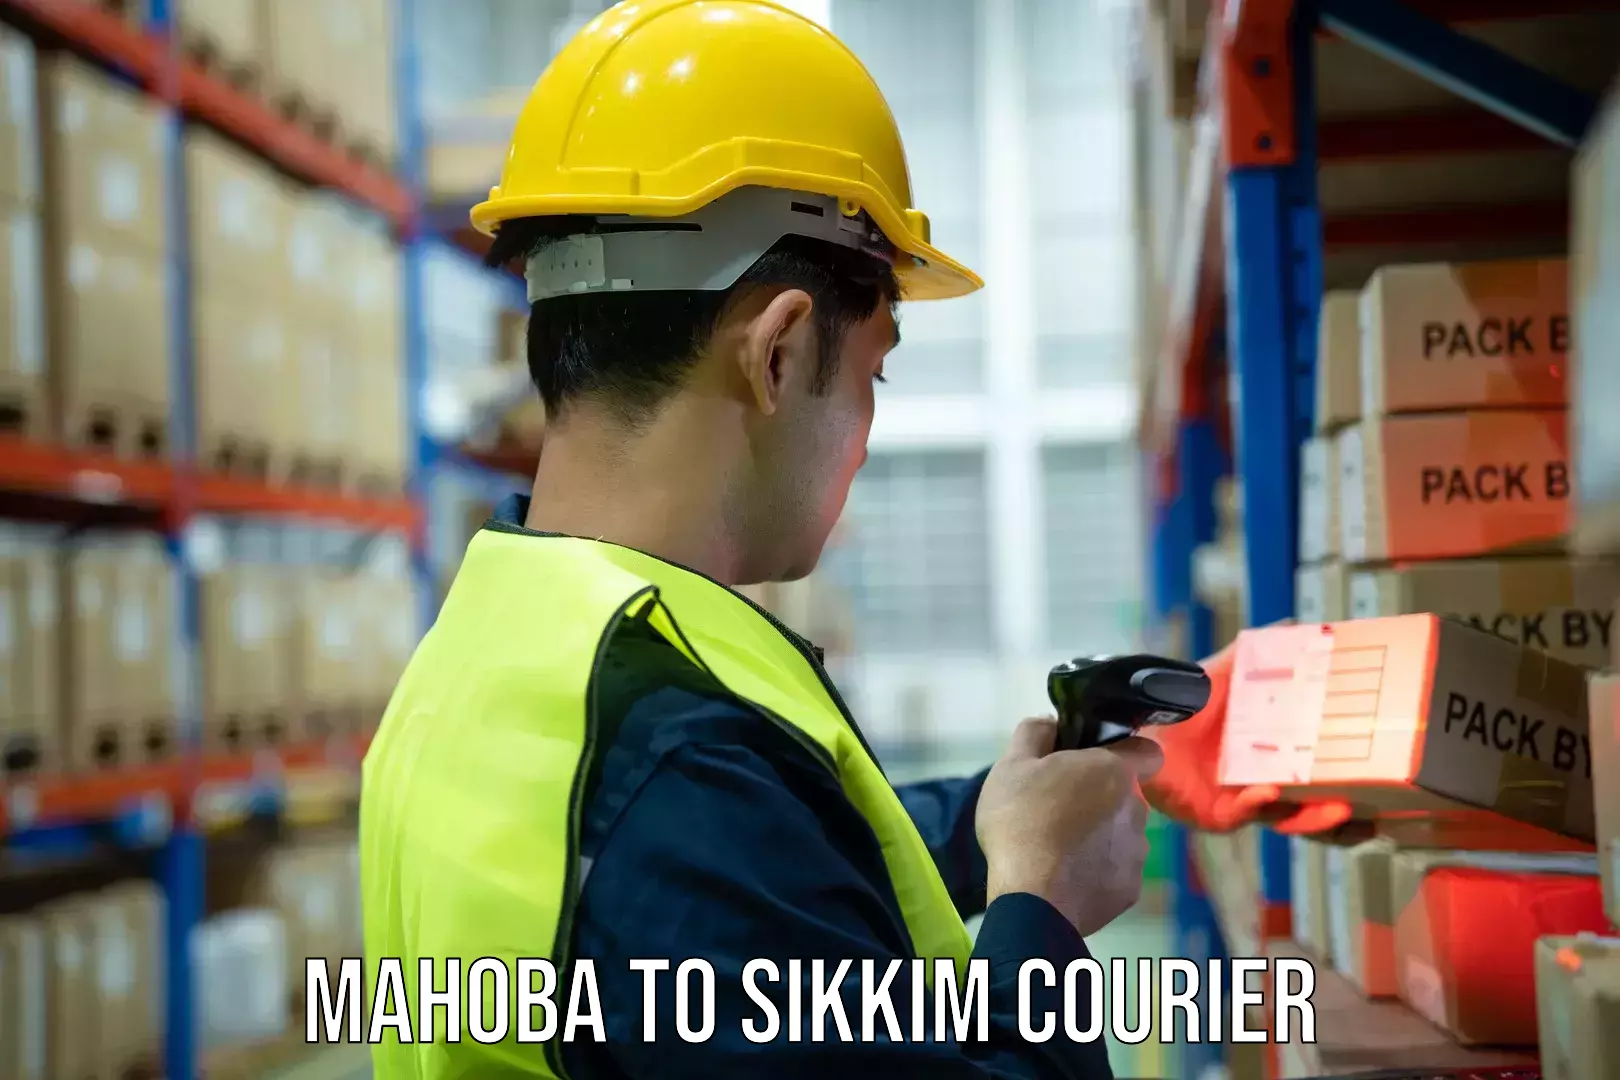 Courier service innovation Mahoba to Rangpo